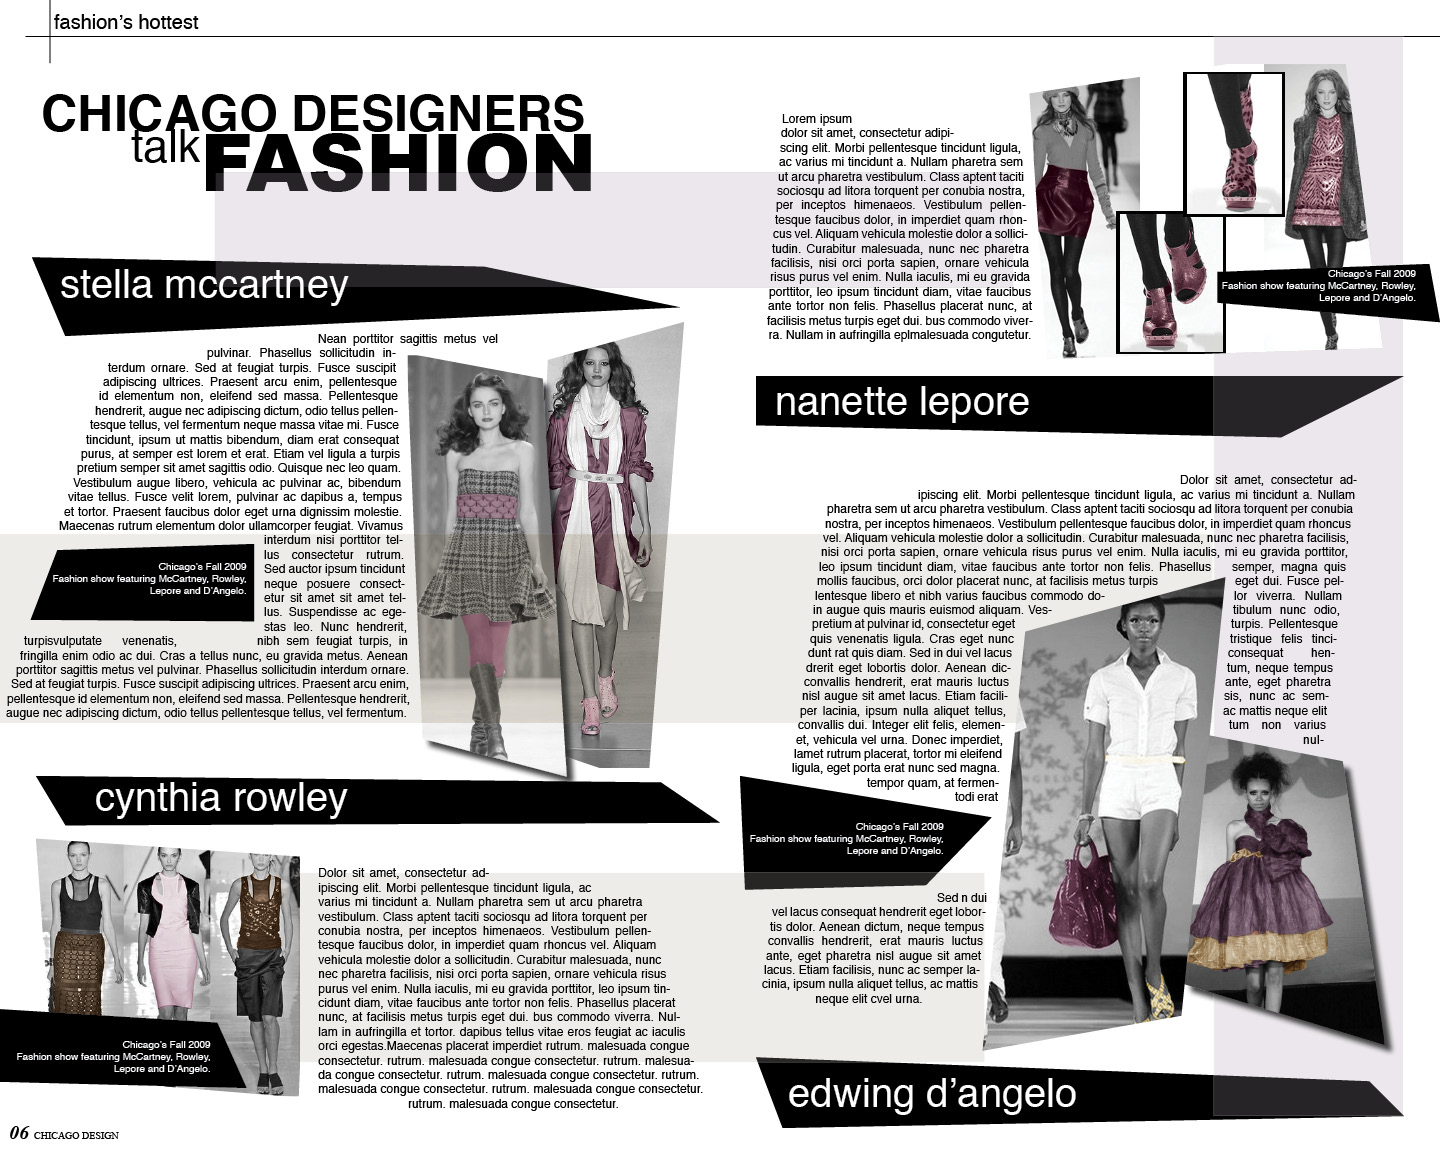 Fashion Magazine Layout Design